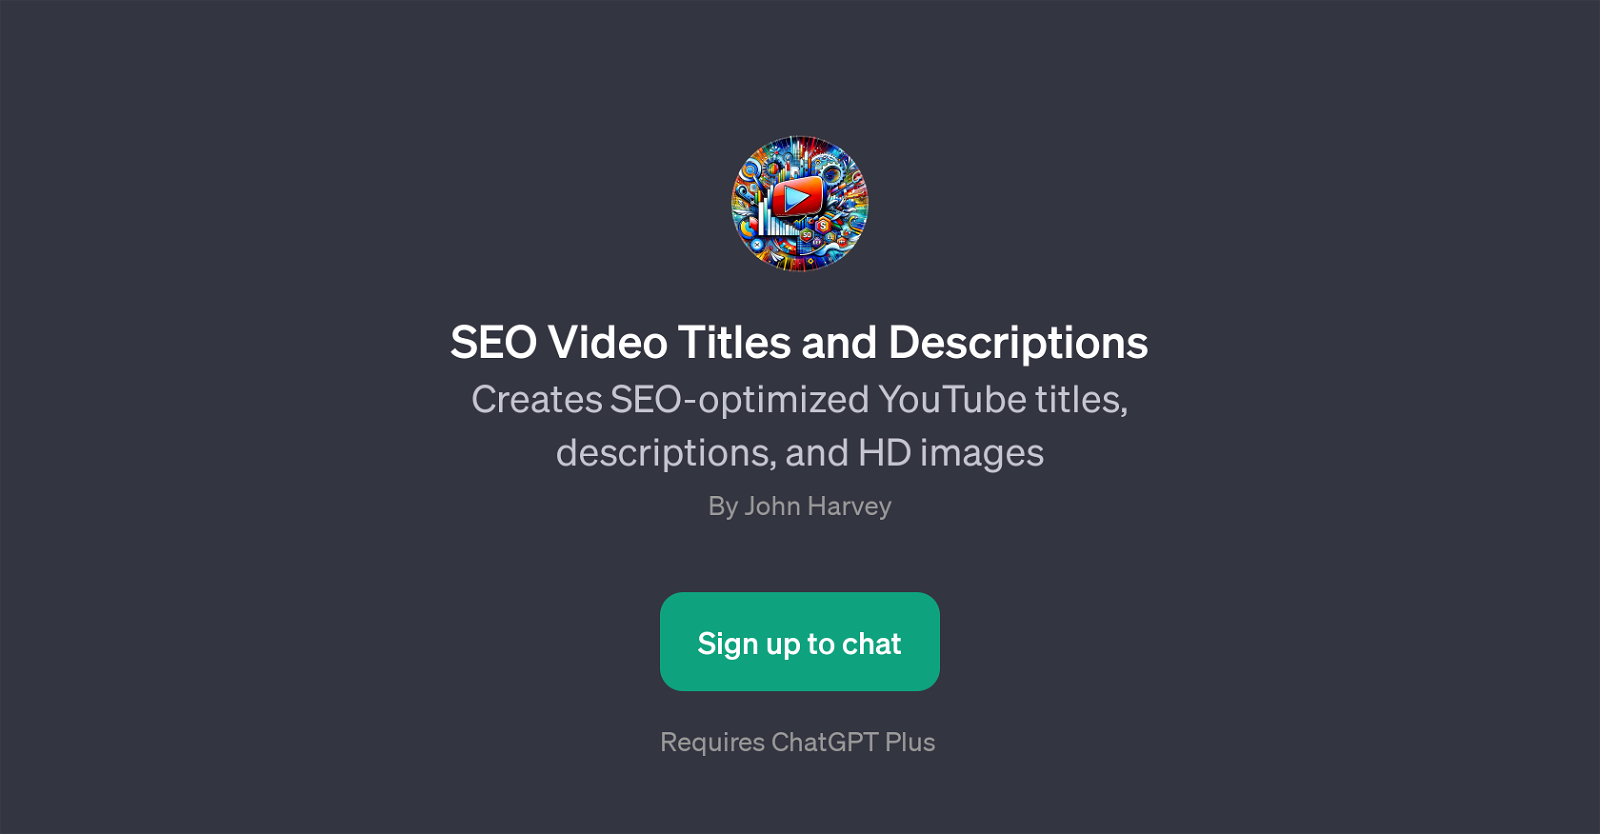 SEO Video Titles and Descriptions website